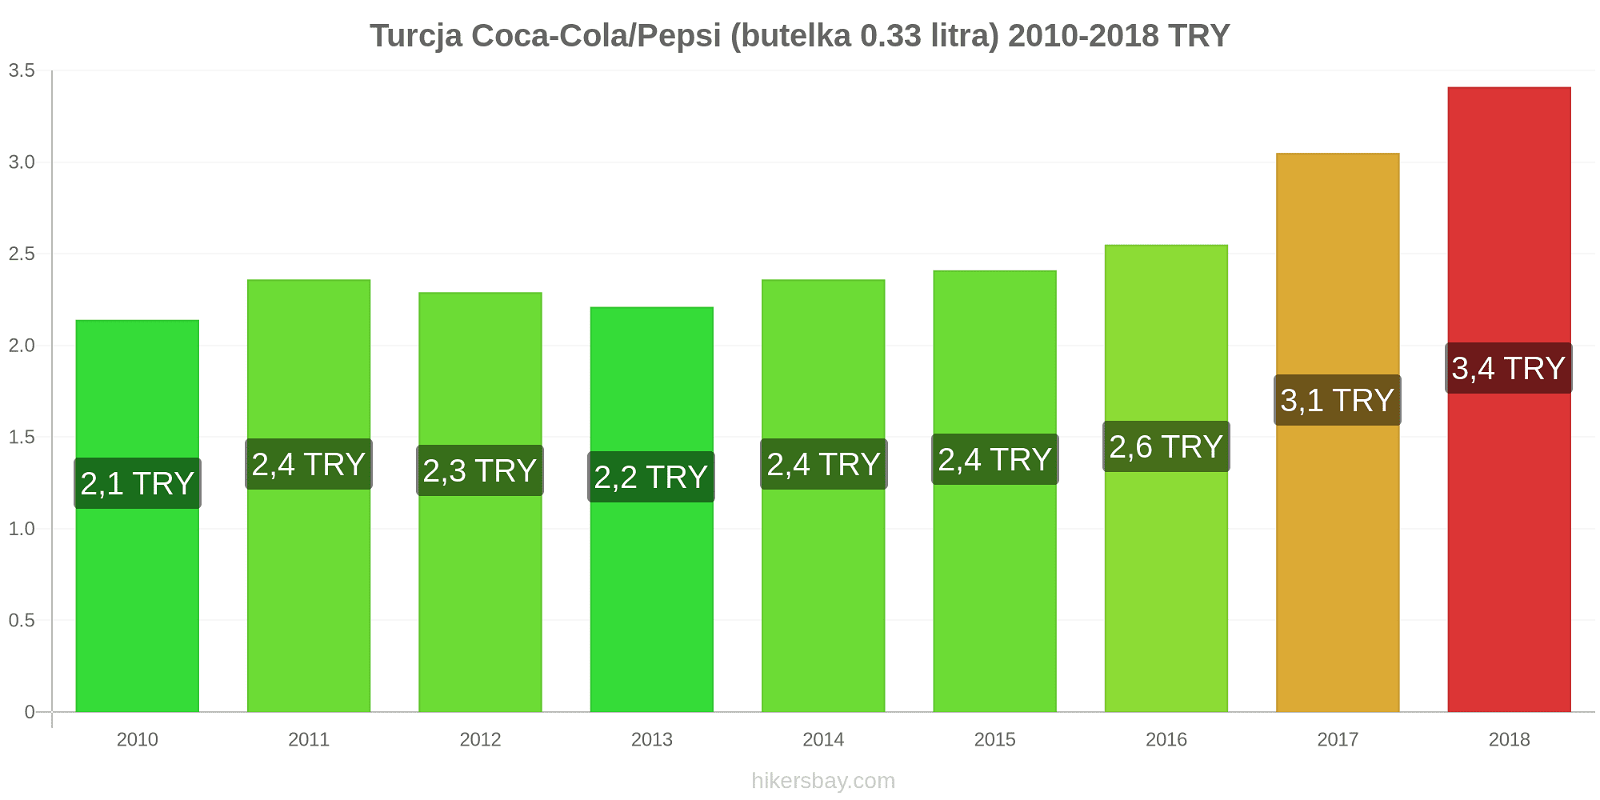 Turcja zmiany cen Coca-Cola/Pepsi (butelka 0.33 litra) hikersbay.com